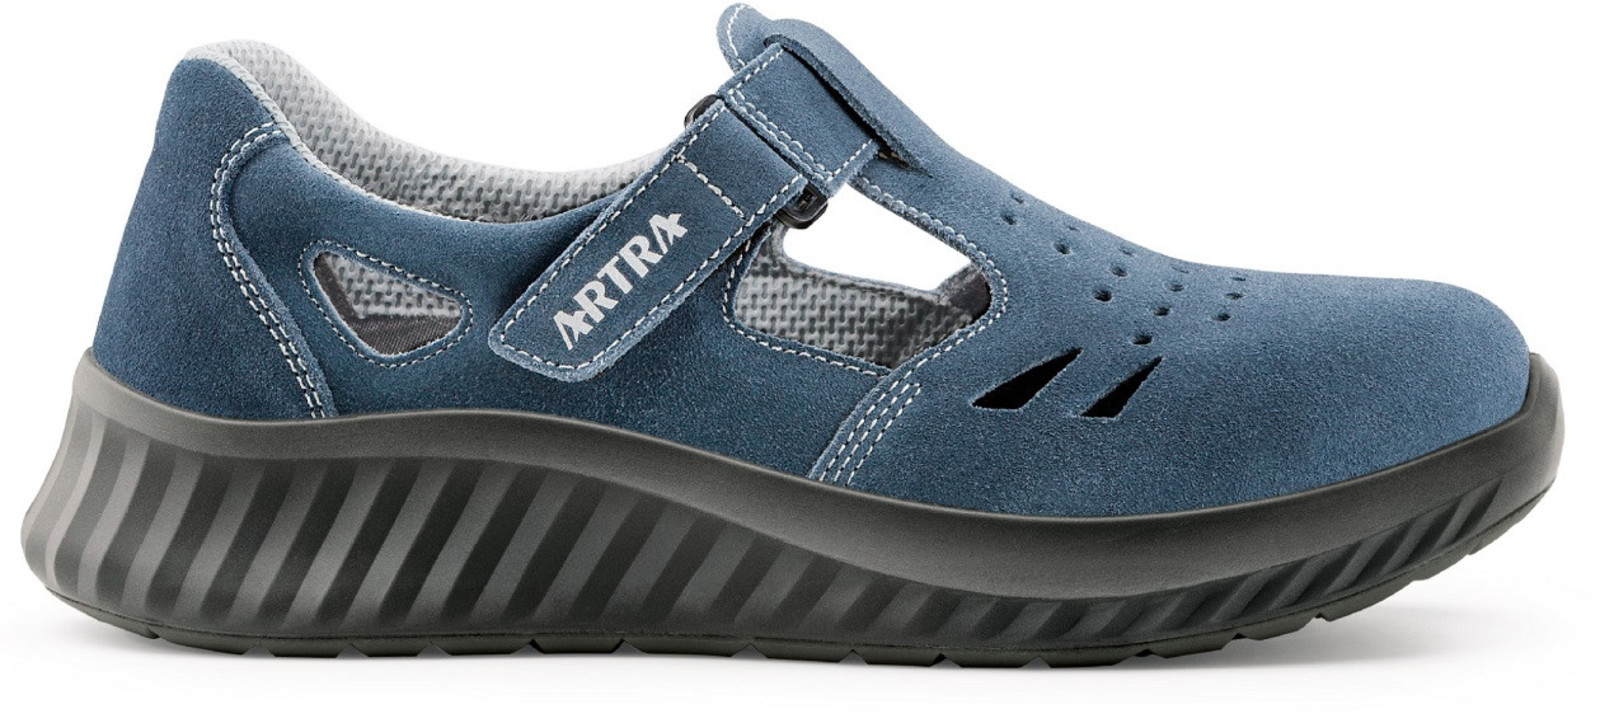 Bezpečnostné sandále Artra Armen 9007 9360 S1 - veľkosť: 37, farba: modrá